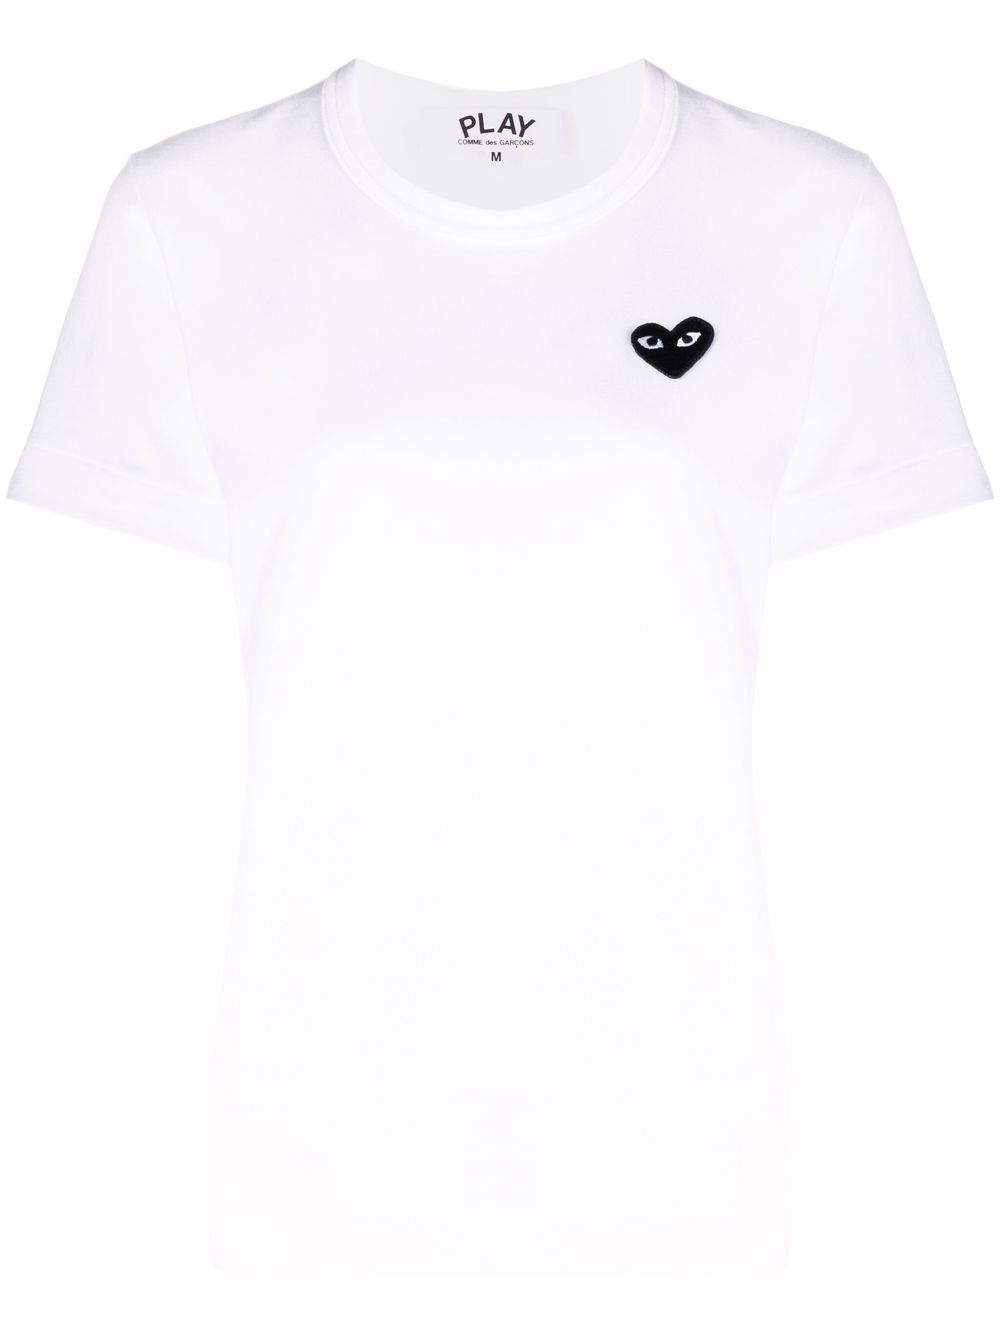 T-shirt in cotone bianco/nero con motivo ricamato a cuore